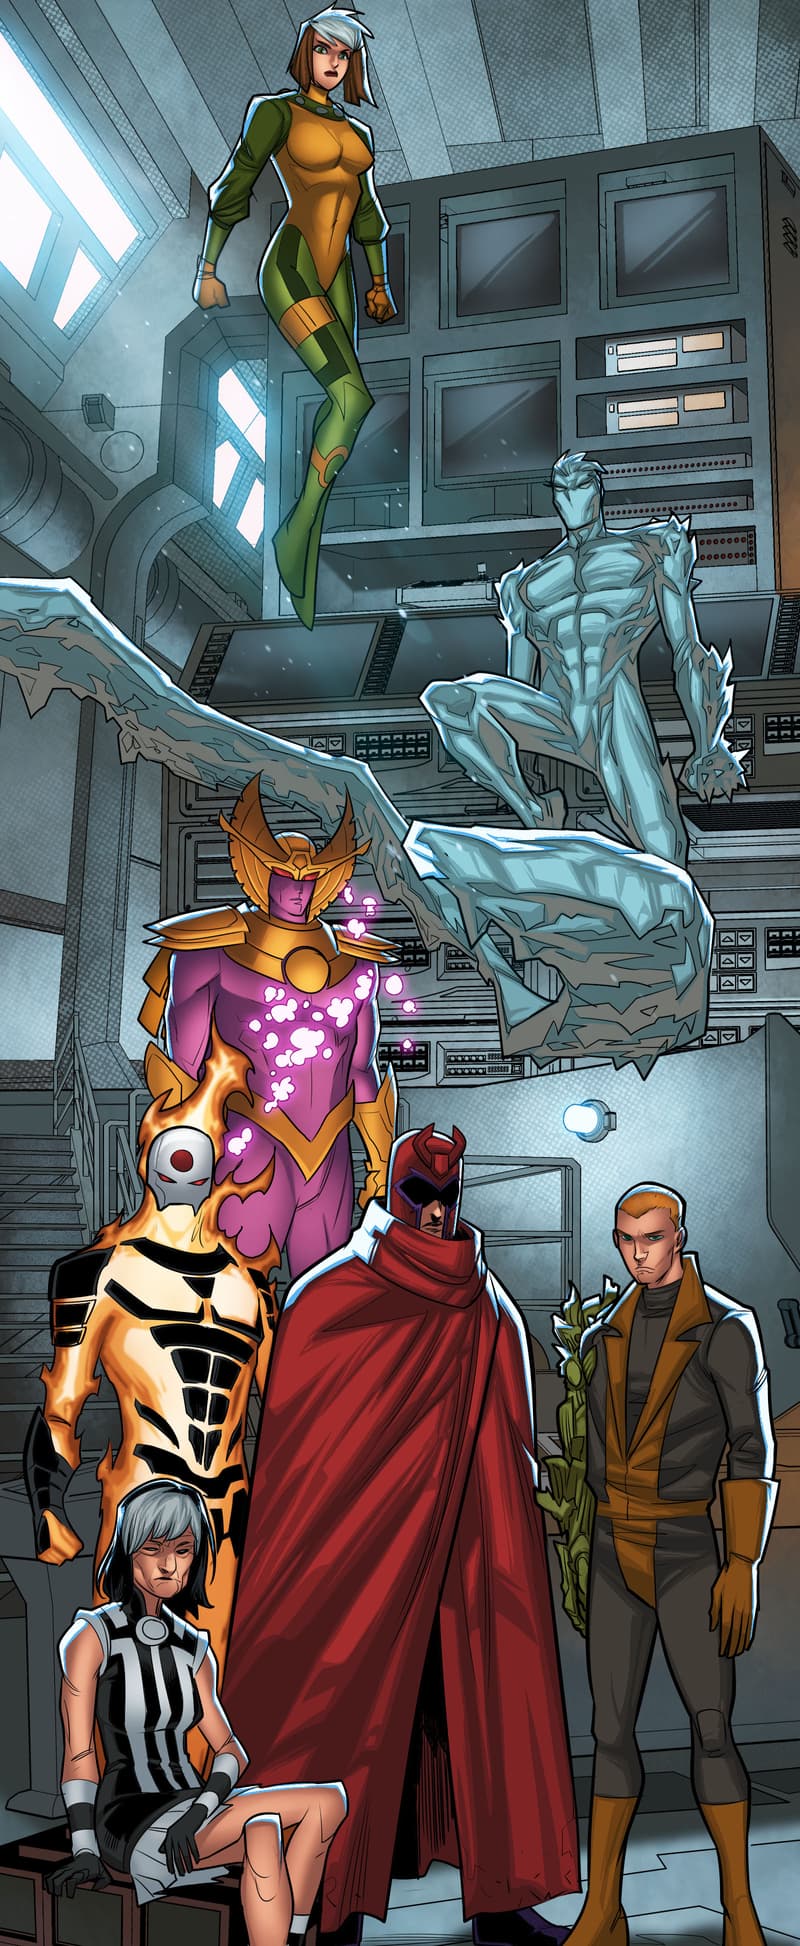 A sneak peek at Krakoa’s AGE OF APOCALYPSE from X-MEN UNLIMITED INFINITY COMIC #64.